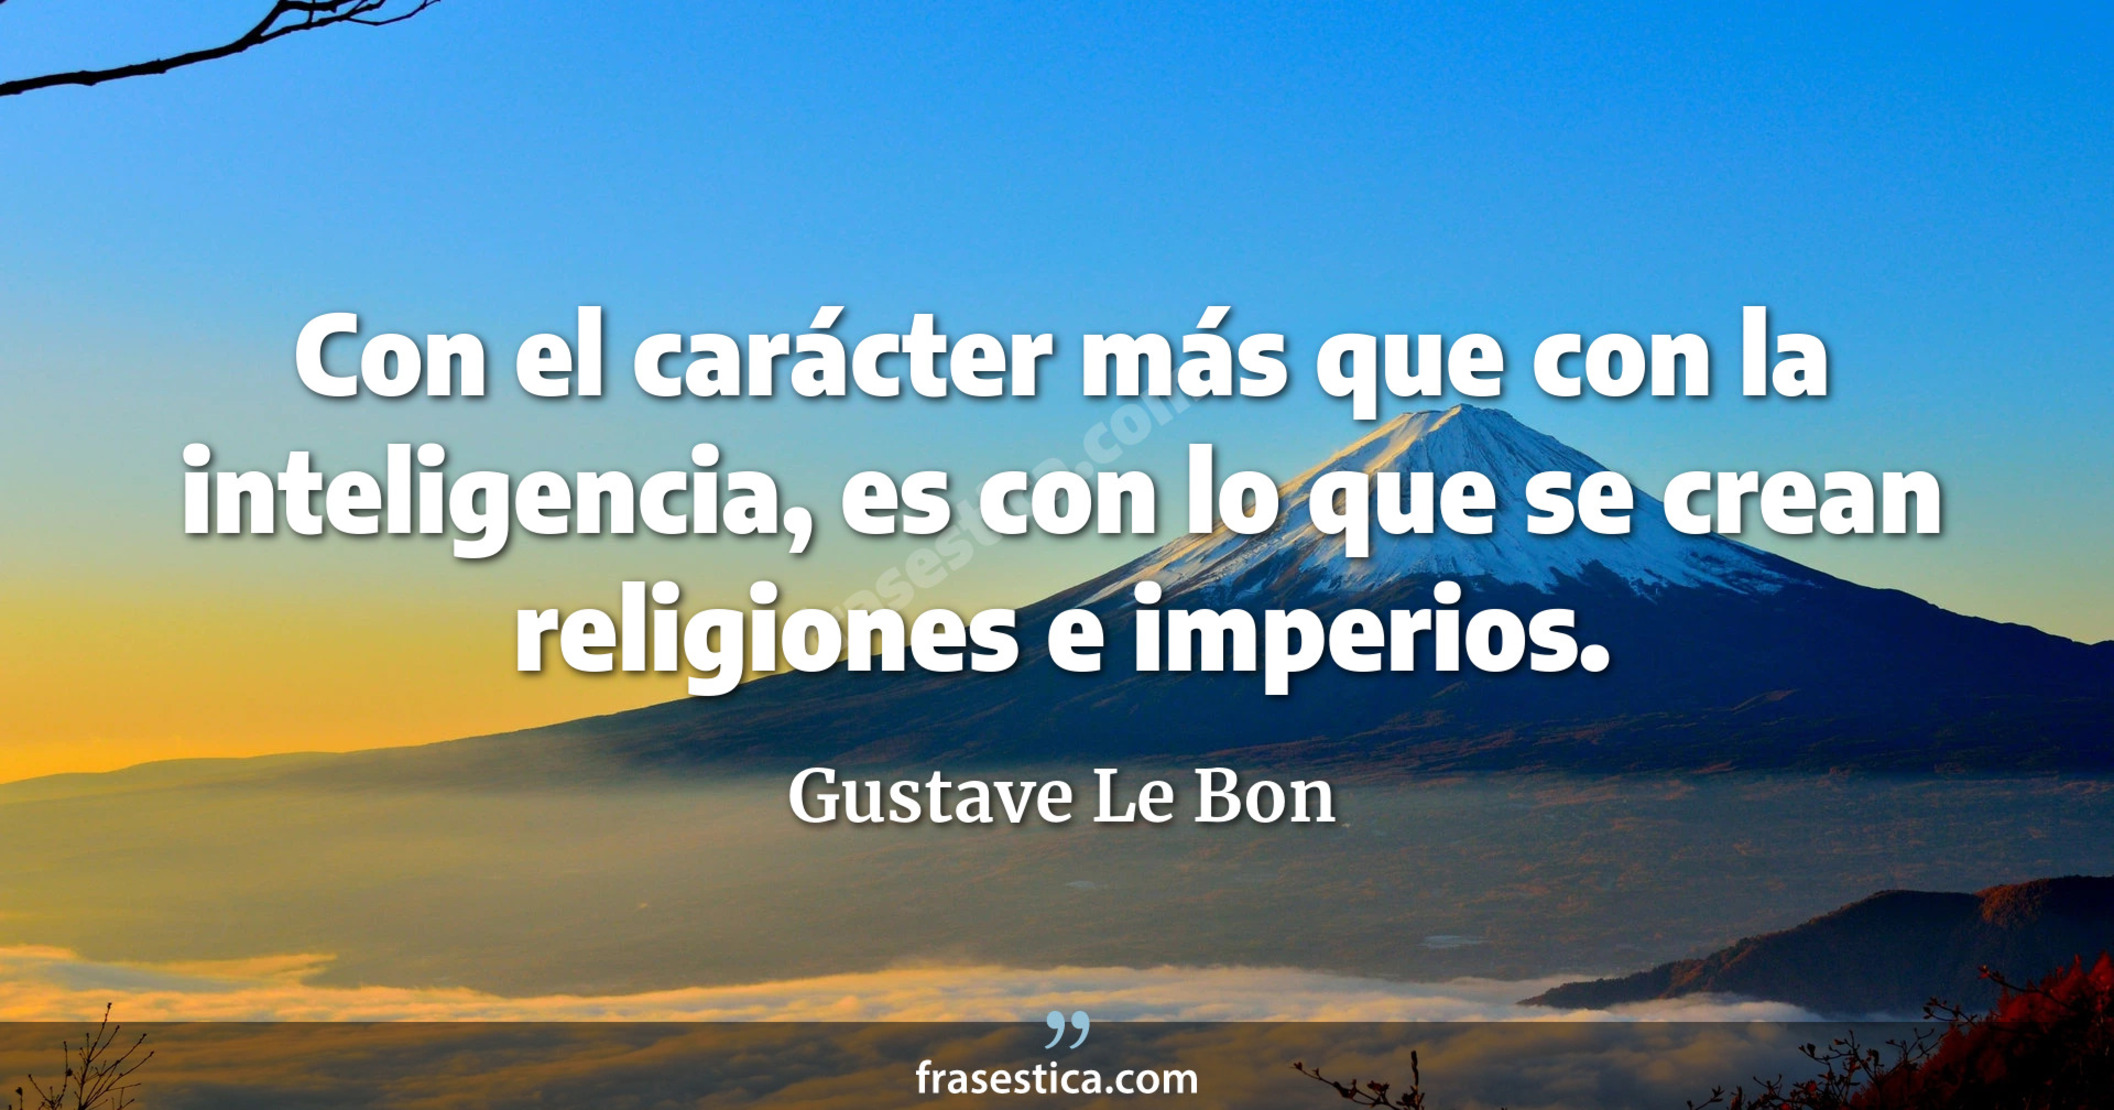 Con el carácter más que con la inteligencia, es con lo que se crean religiones e imperios. - Gustave Le Bon